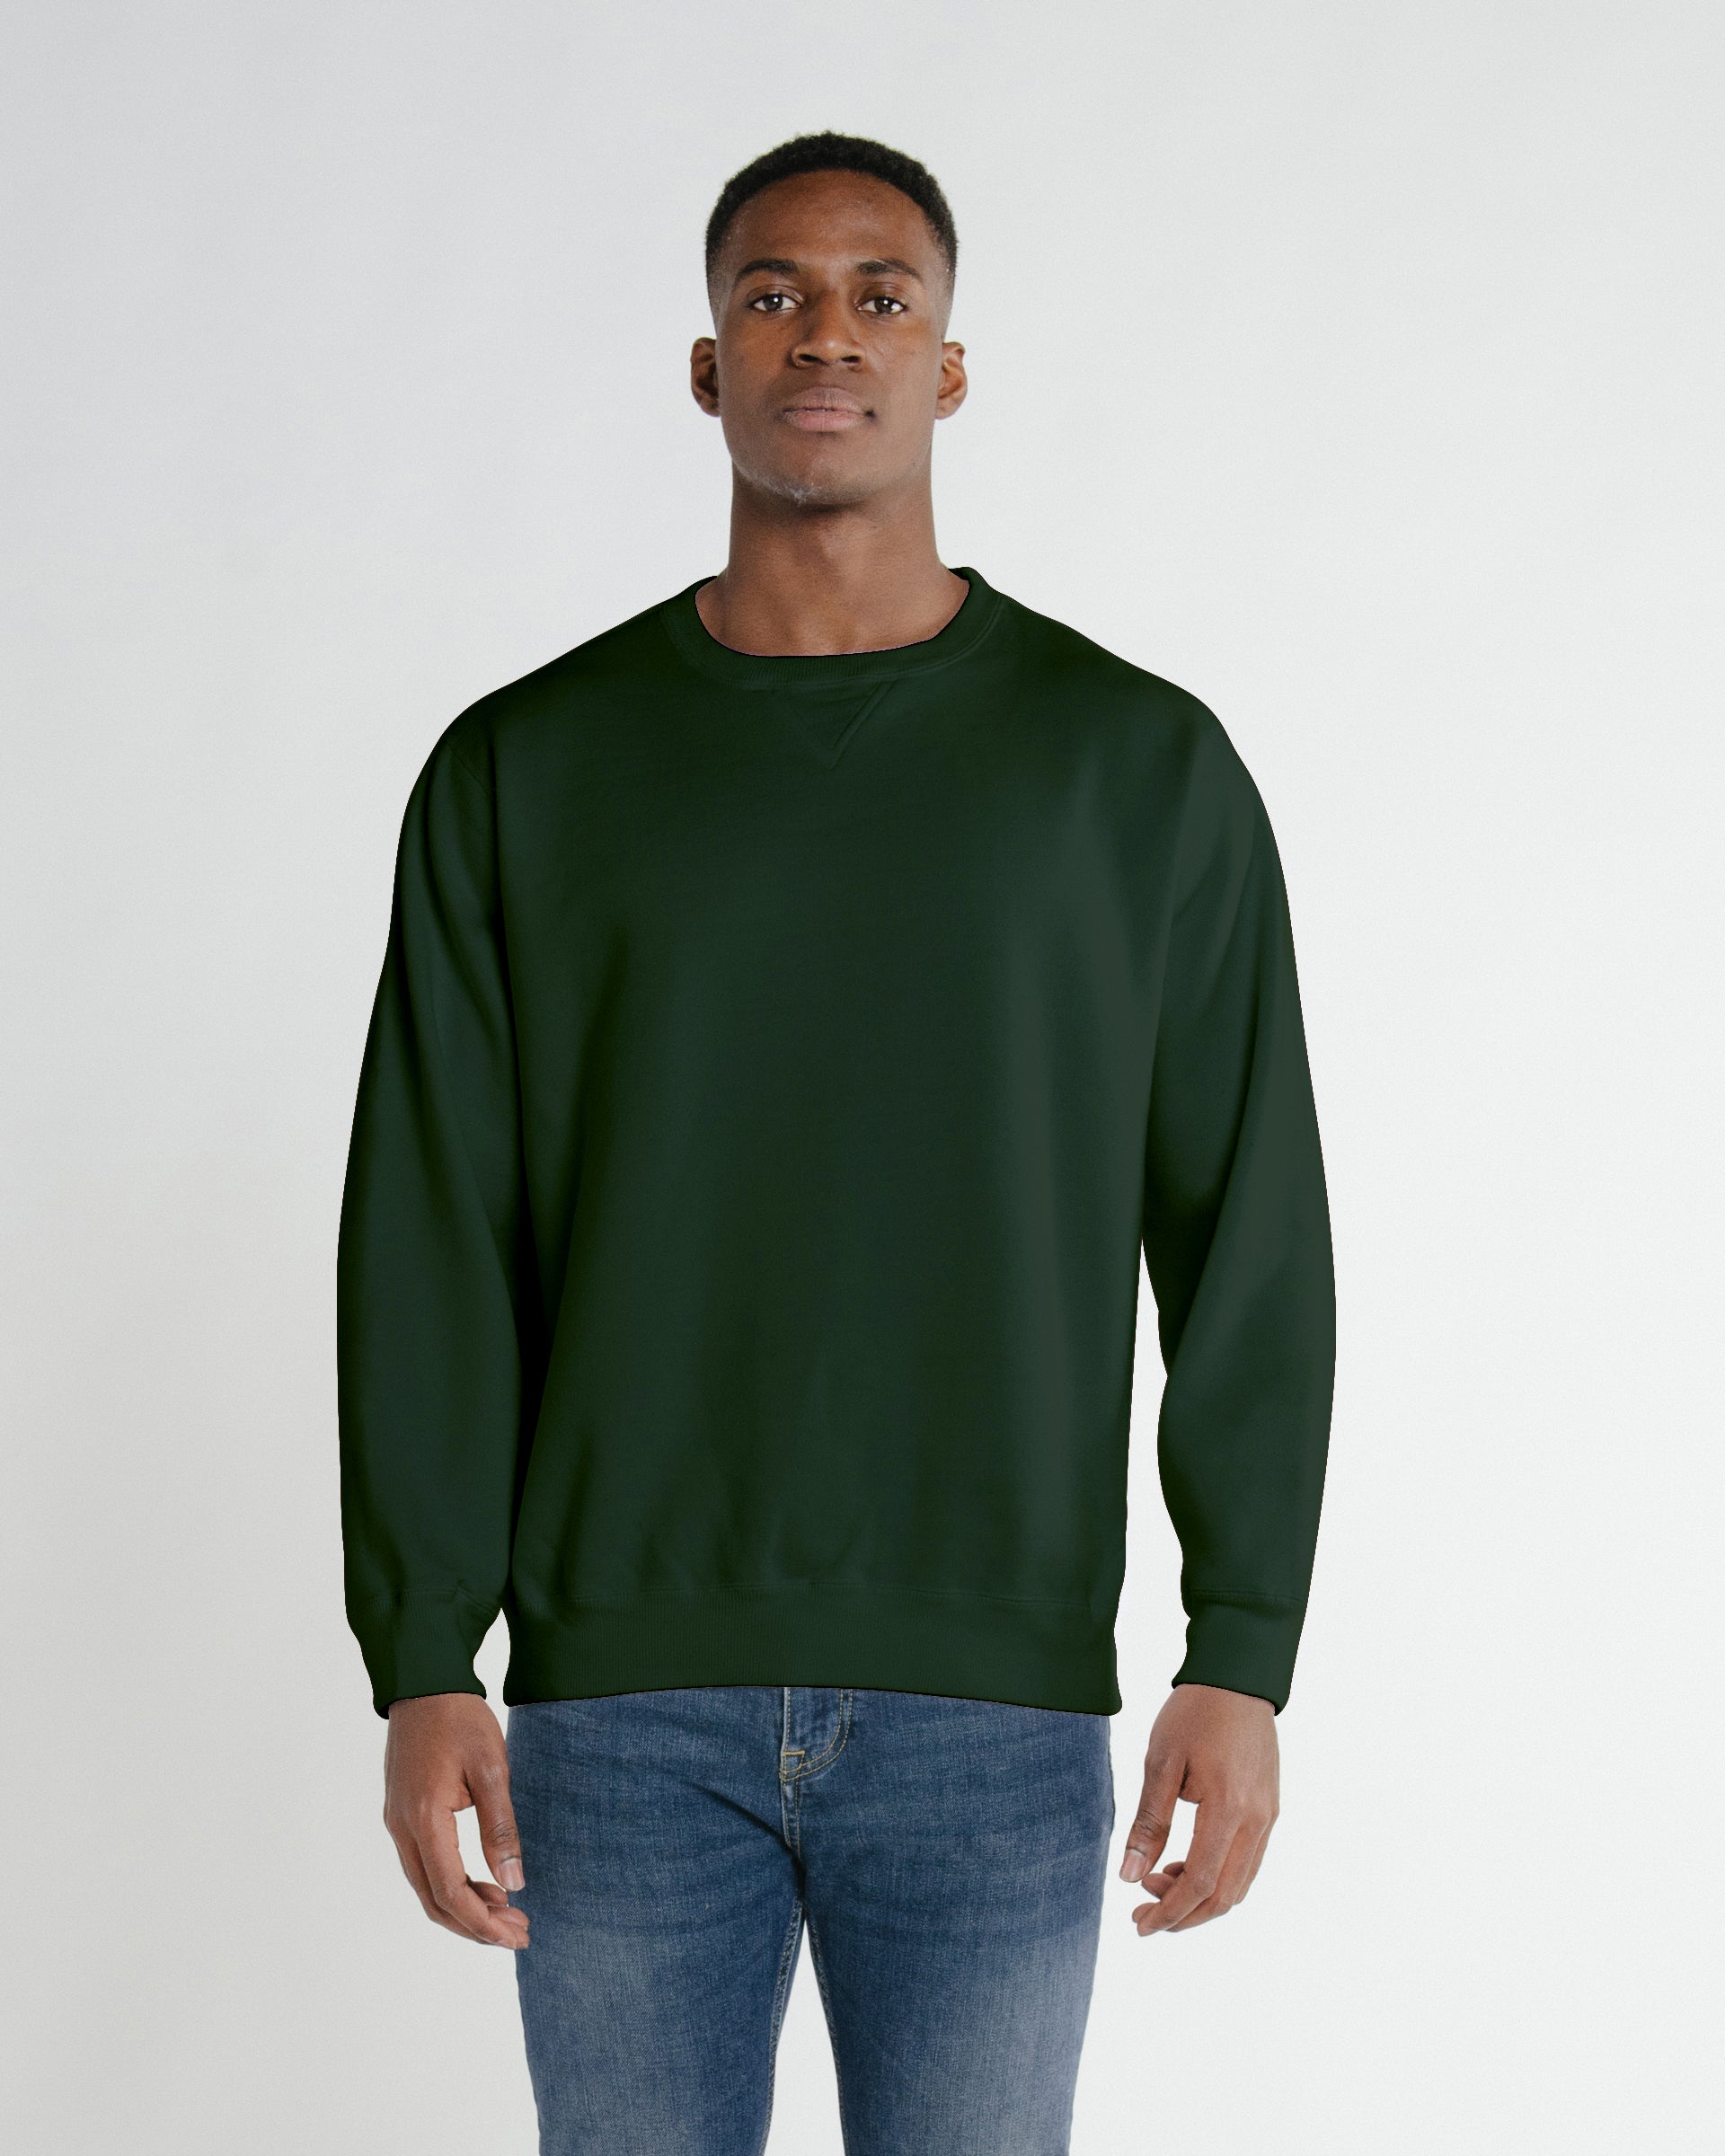 Heat Press Green Crew-neck Sweatshirt #562 - Merry Mart Uniforms